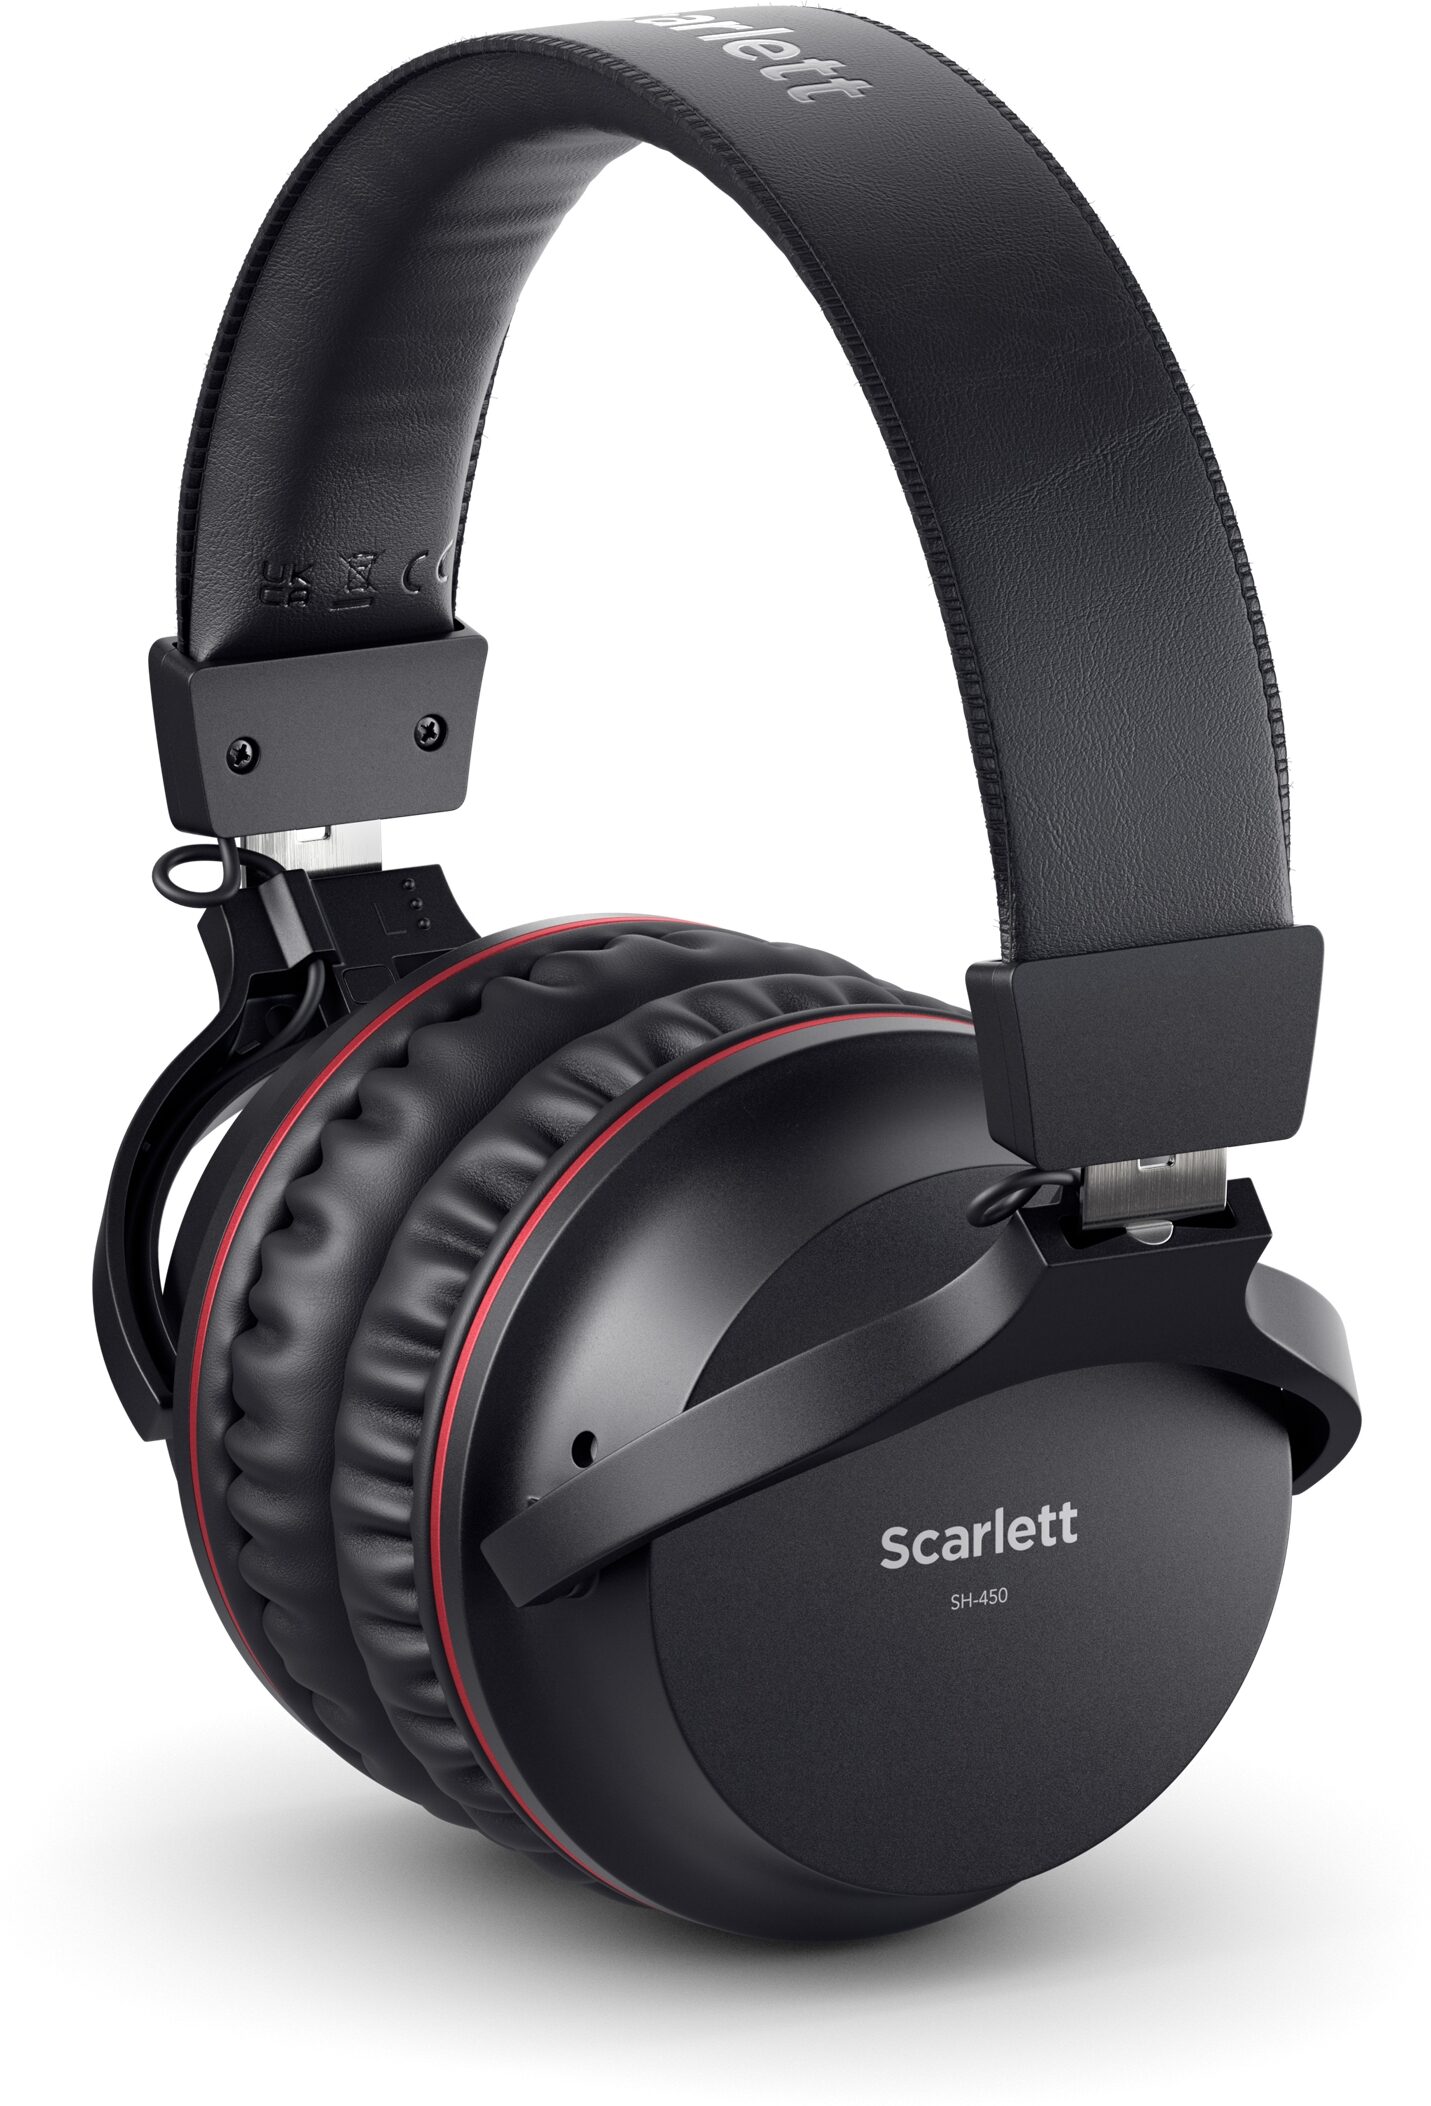 Focusrite SCARLETTSOLO-4G Scarlett Solo 4th Gen Audio Interface